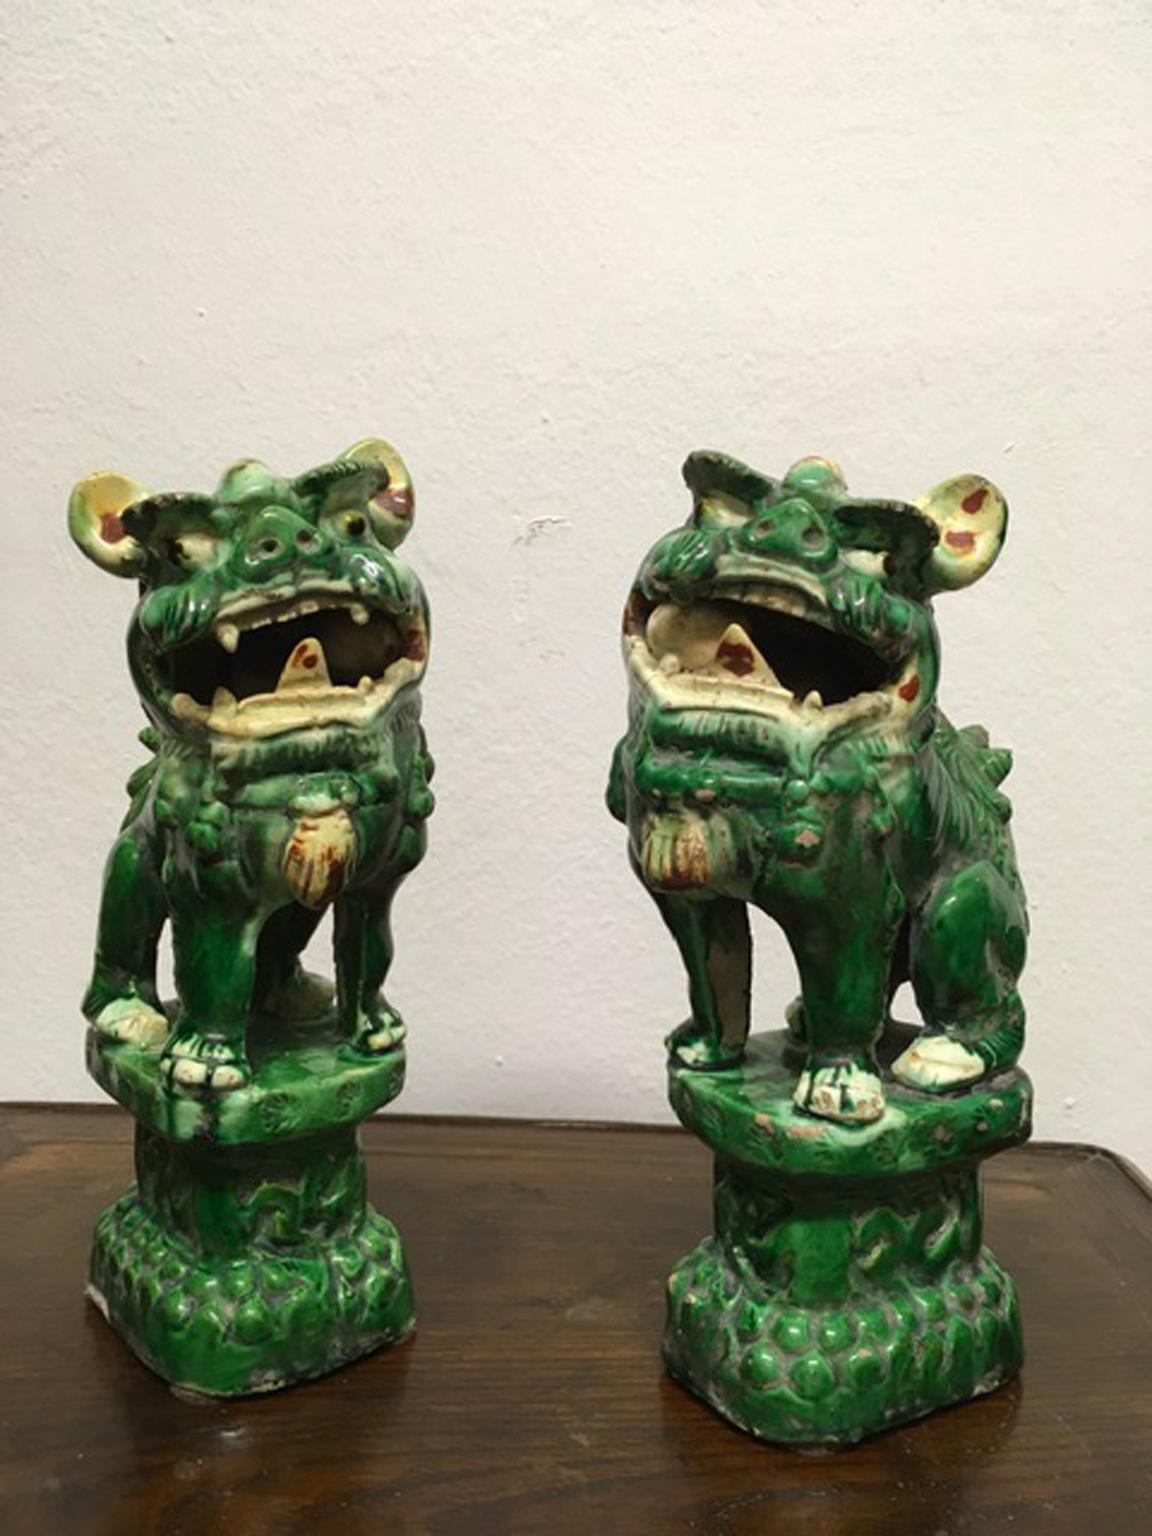 Dieses Paar von Qing Pho Hunden ist sehr dekorativ für seine grün gefärbte Emaille und sehr trendy in einem eleganten Raum.
Nach östlicher Auffassung sind die Pho-Hunde der Beschützer des Hauses.
Sie wurden nicht restauriert und es gibt einige